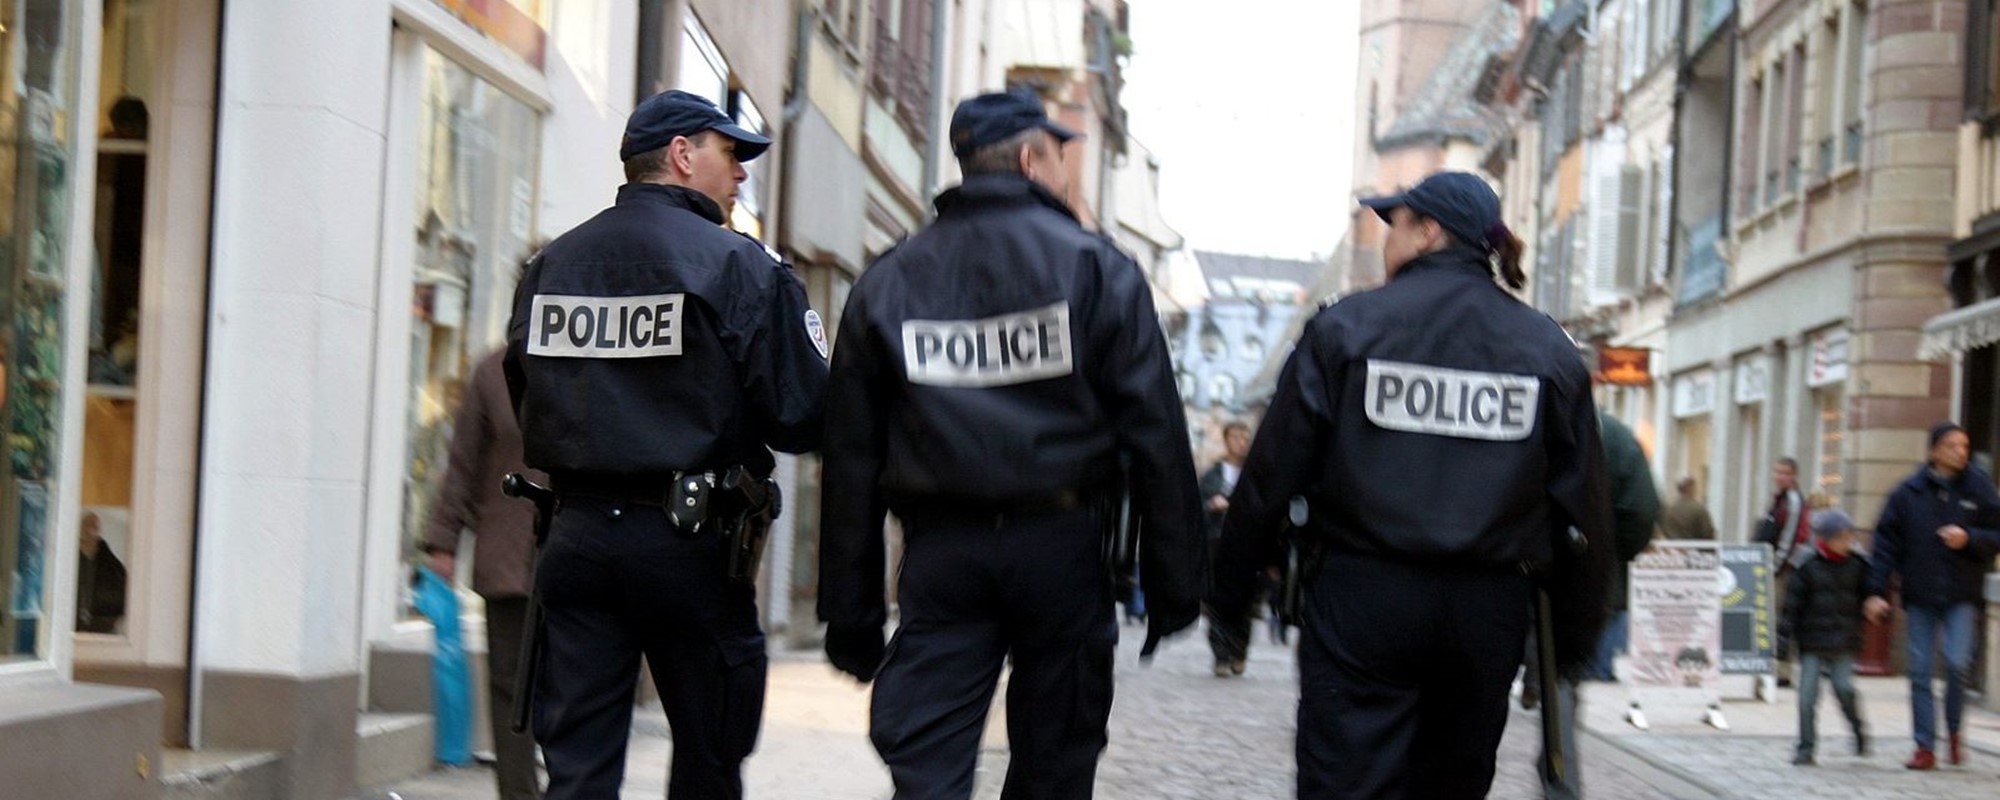 Violences, police, quartiers :  
l'opinion des Français plus nuancée que polarisée 